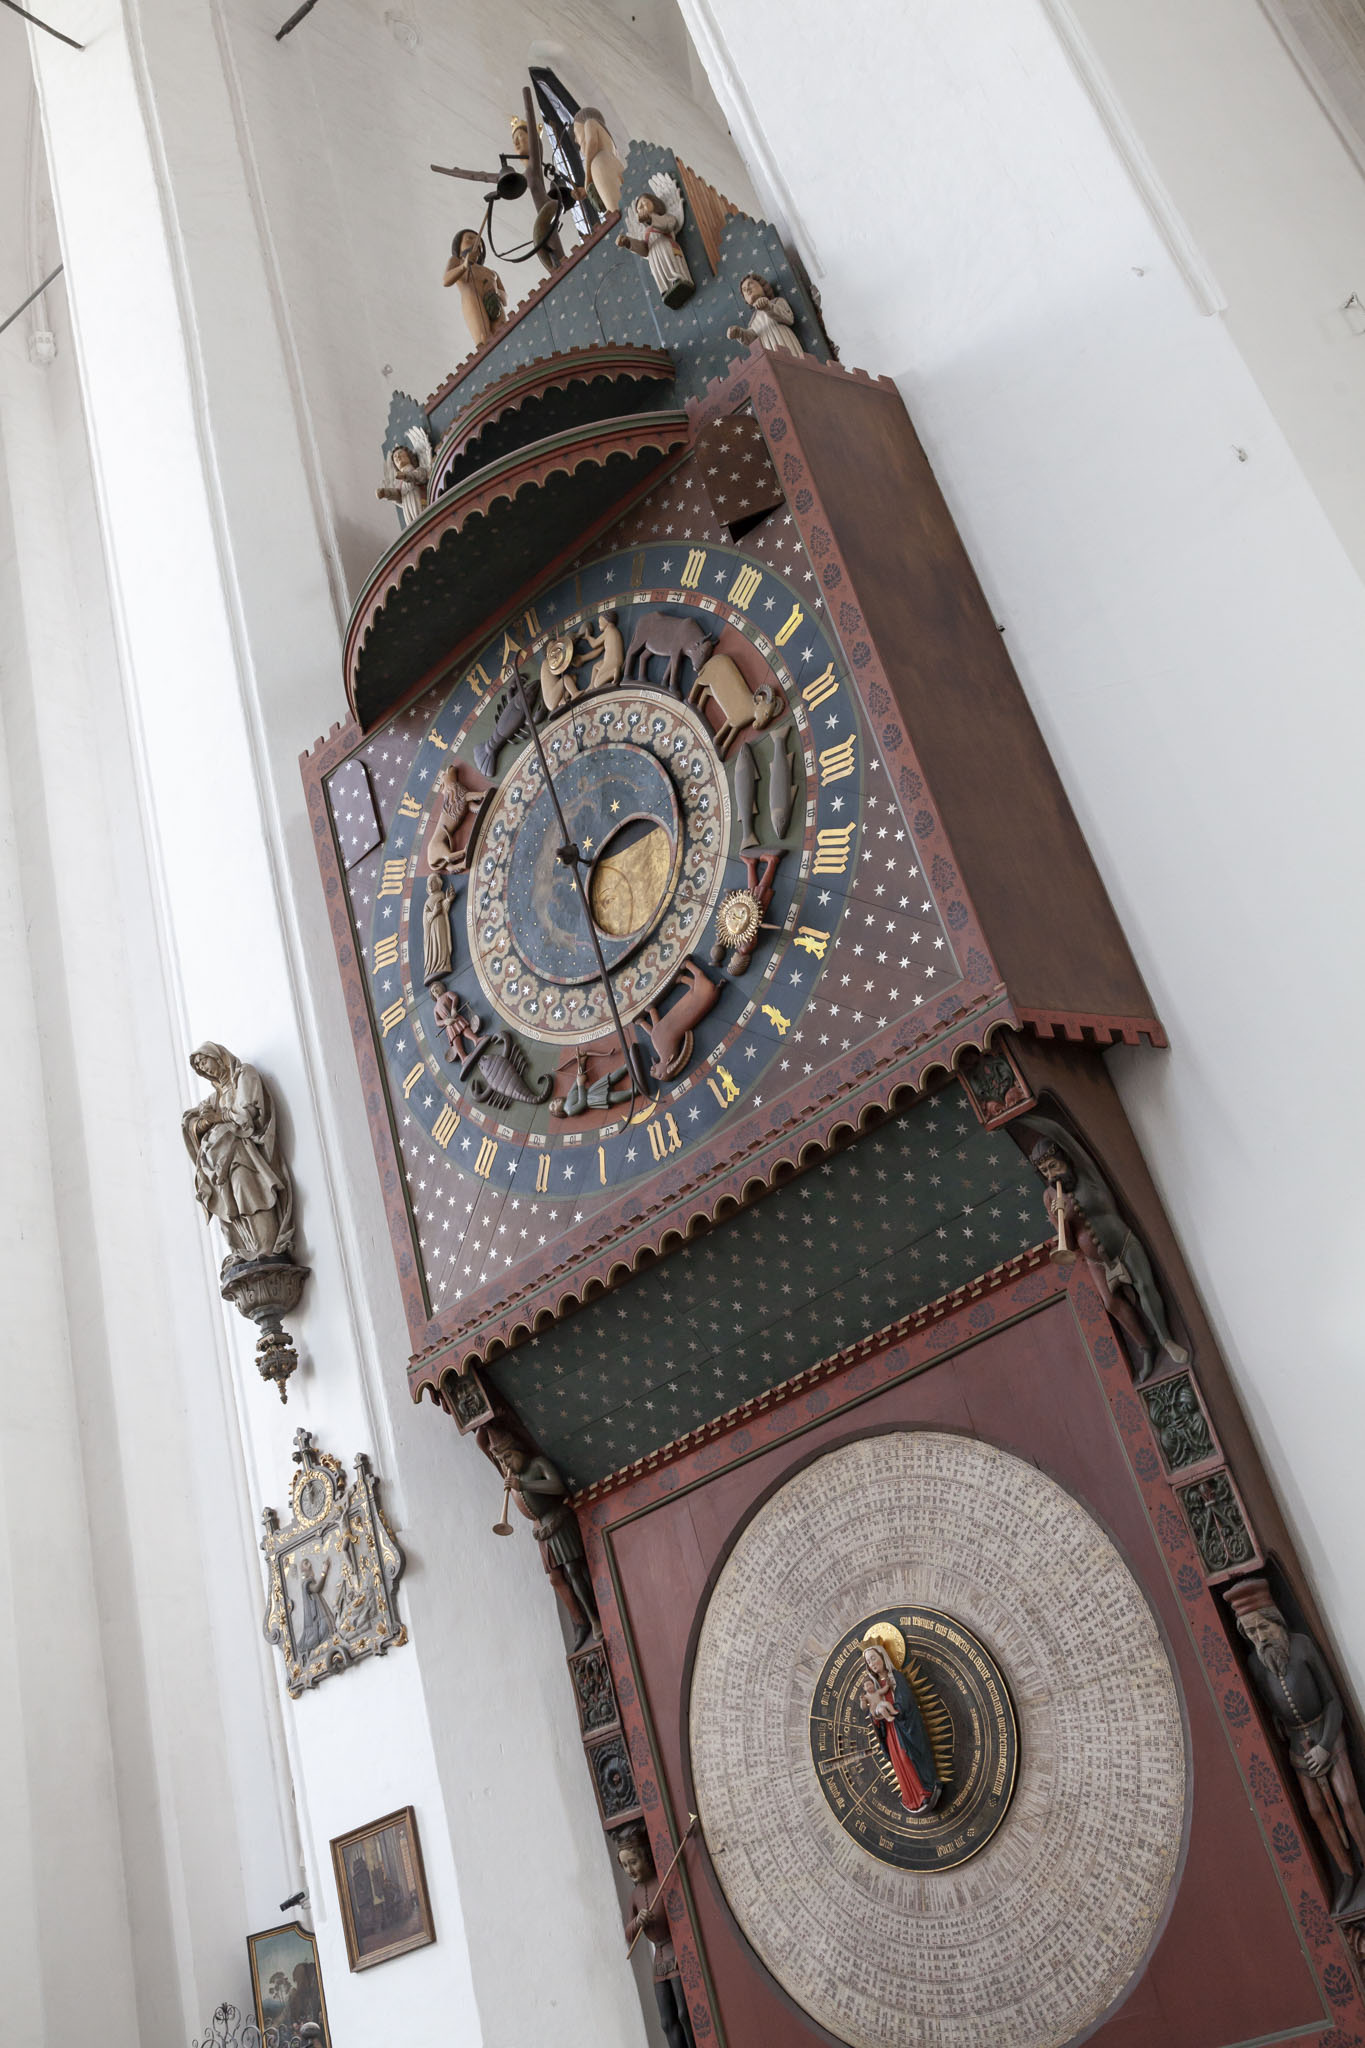 Gdańsk Astronomical Clock